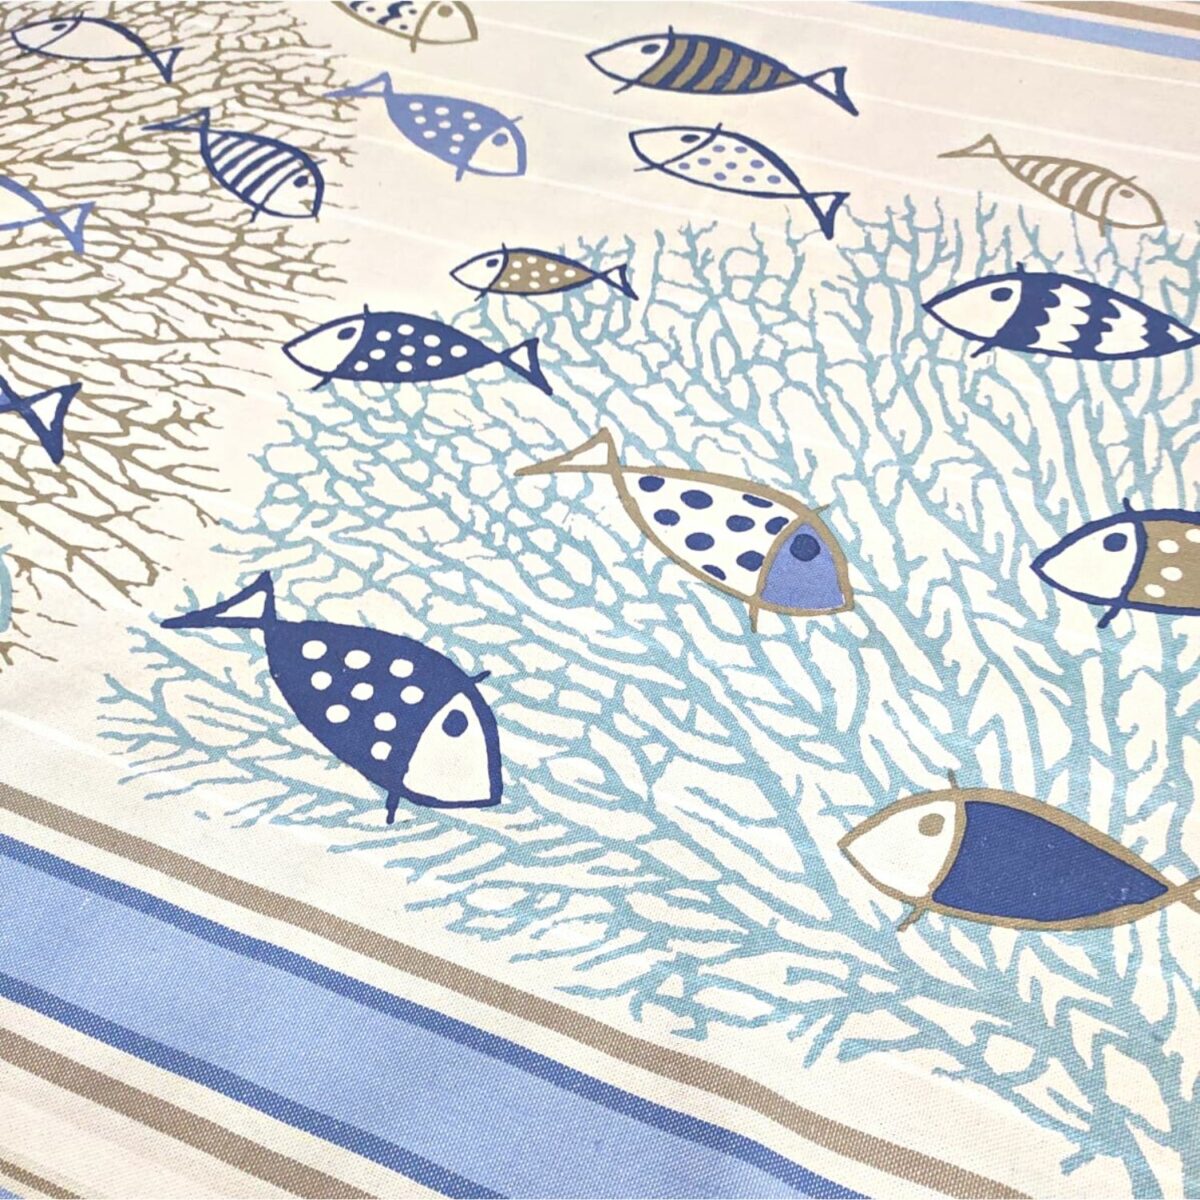 telo-mare-fouta-pescetti-blu-frange-100-cotone-artigianale-dettaglio